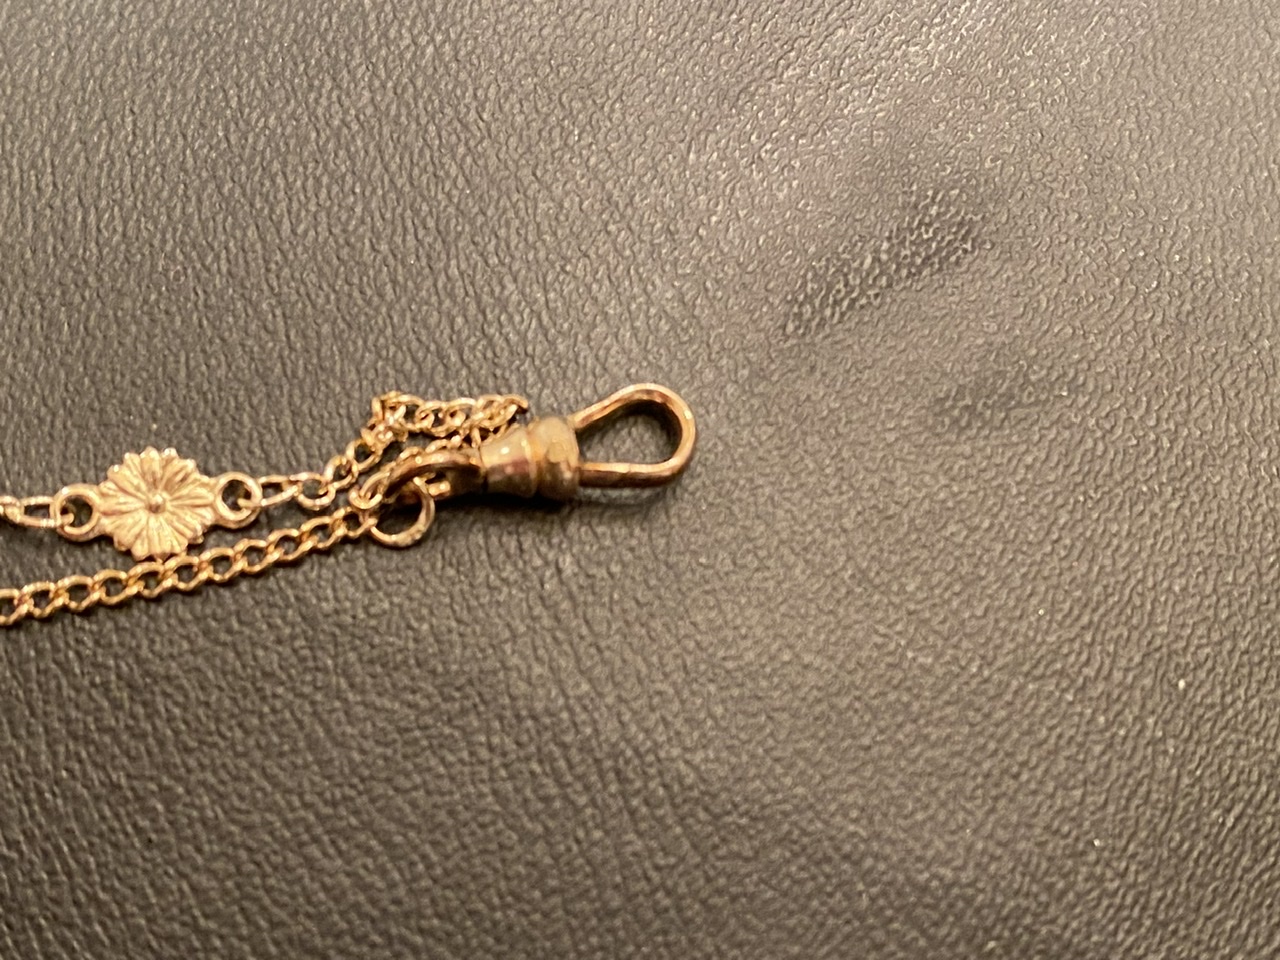 Watch Chain Hallmark | Antiques Board